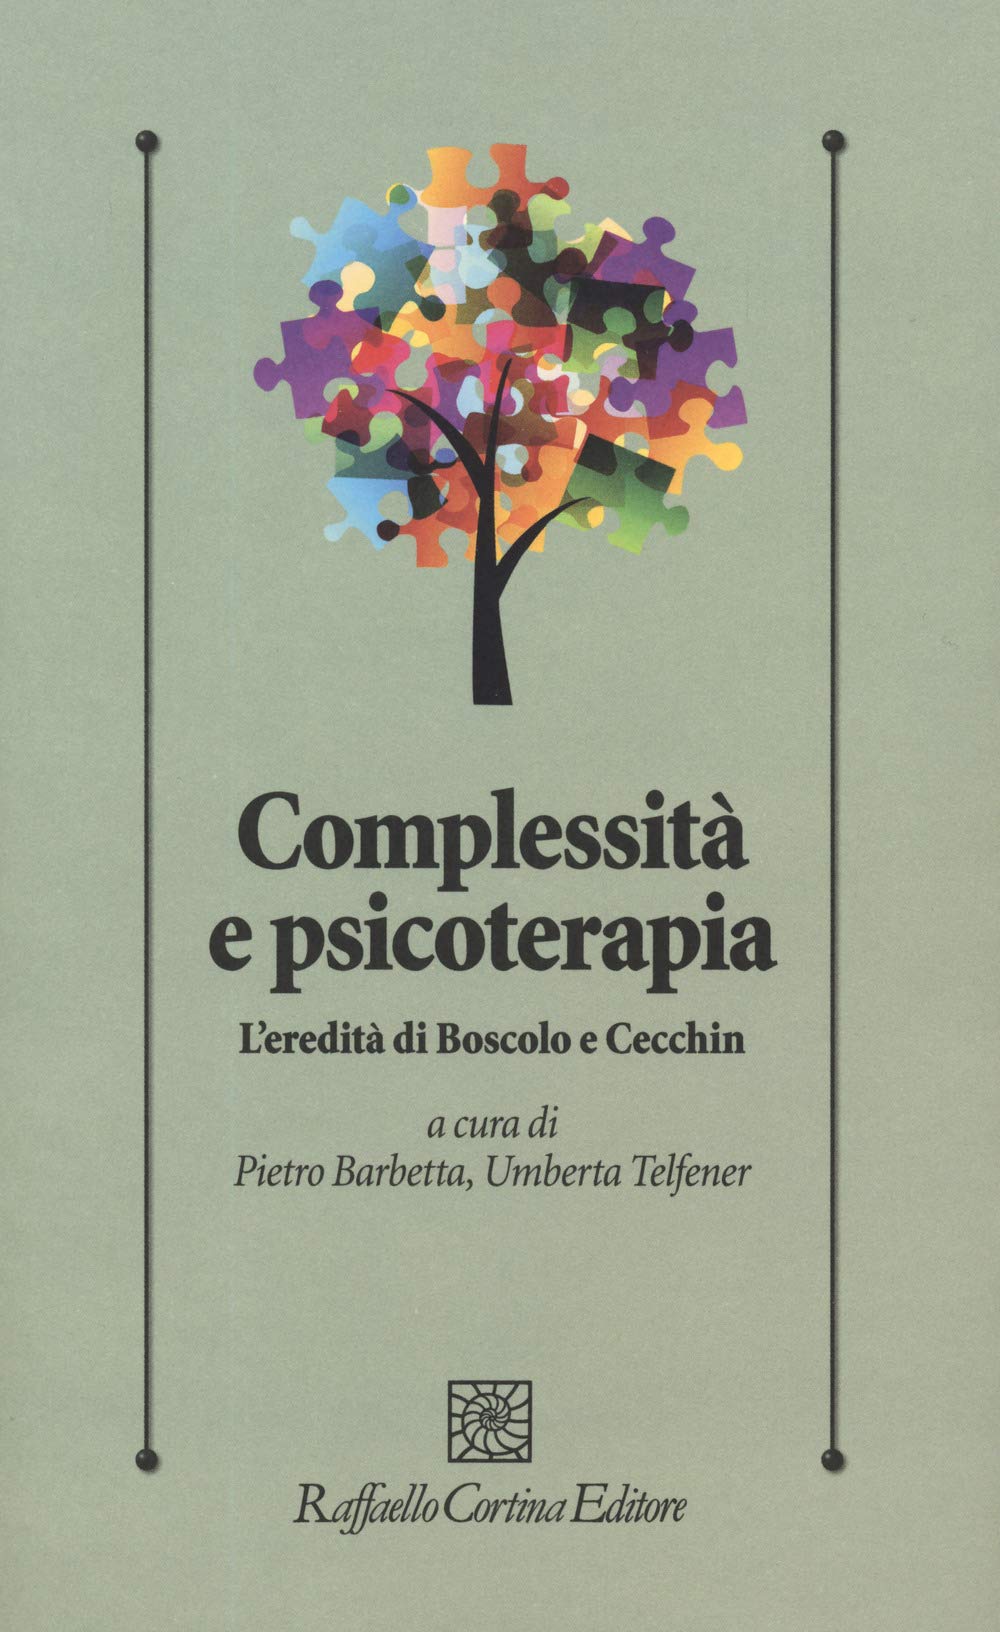 Complessità e psicoterapia. L’eredità di Boscolo e Cecchin - Recensione